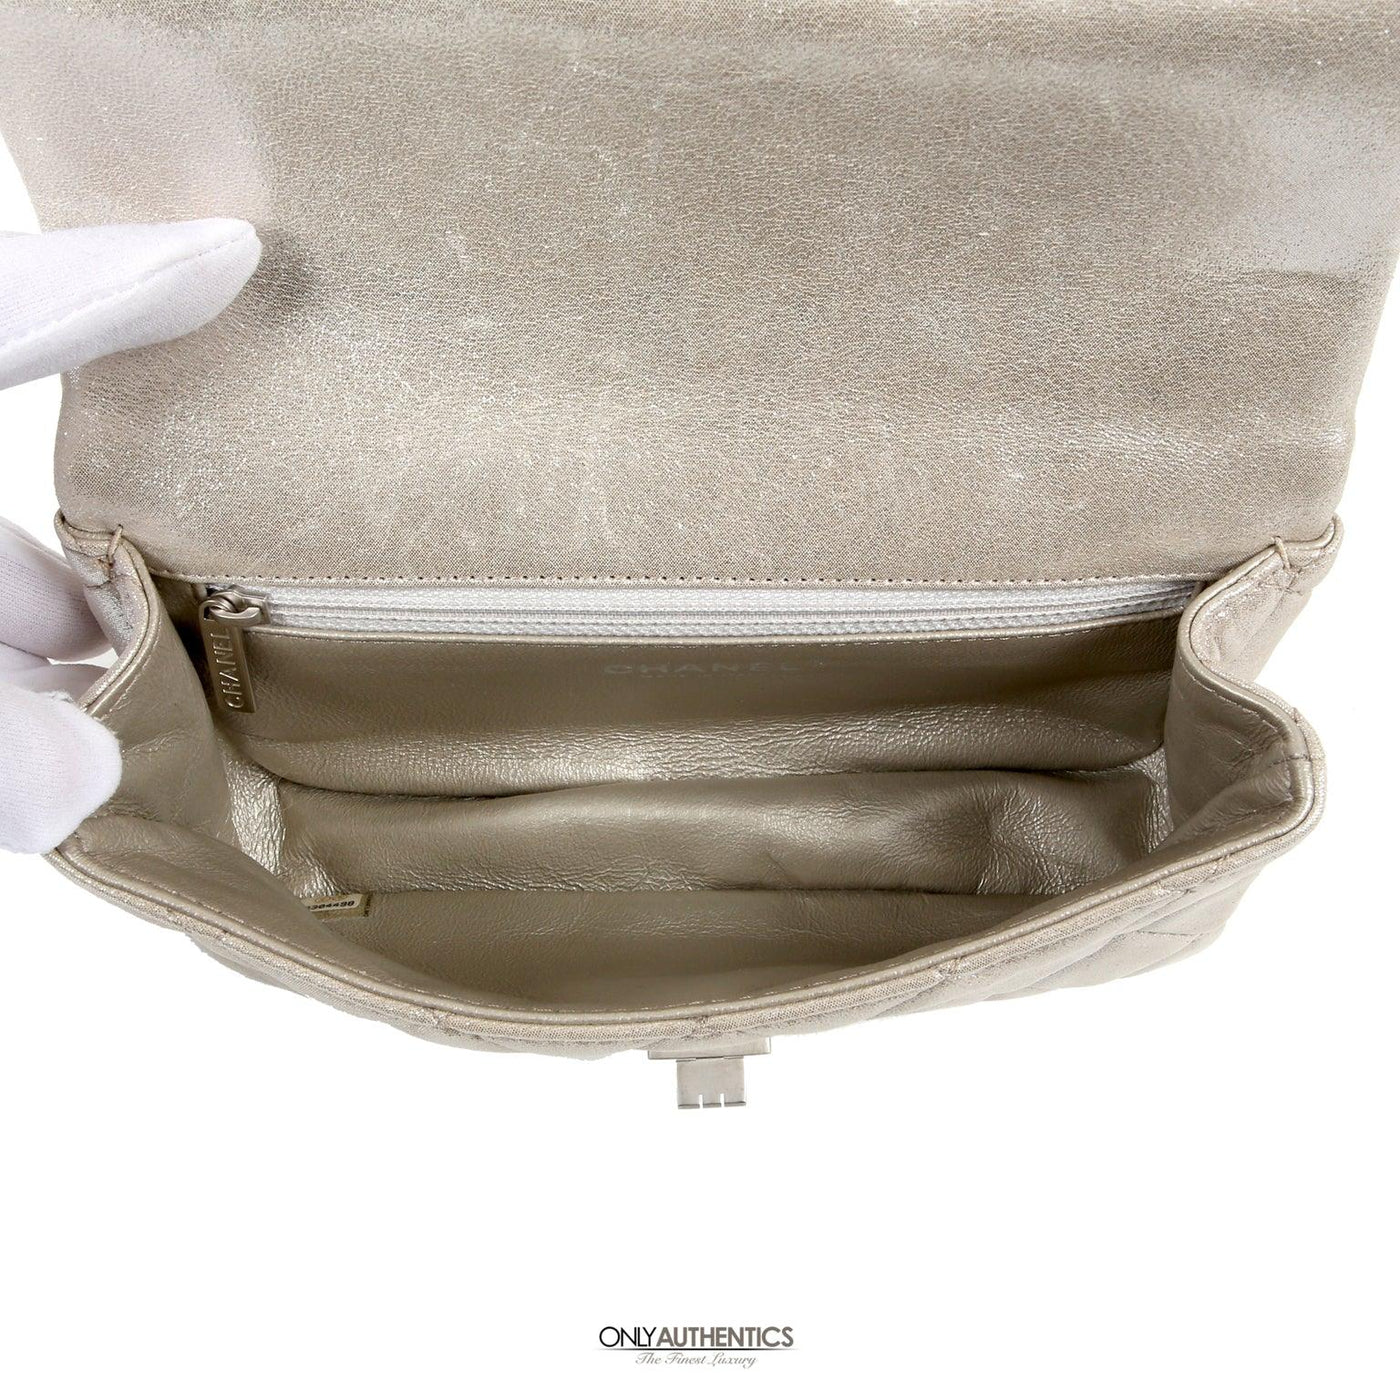 TROV - Silver Nish Leather Metallic Clutch